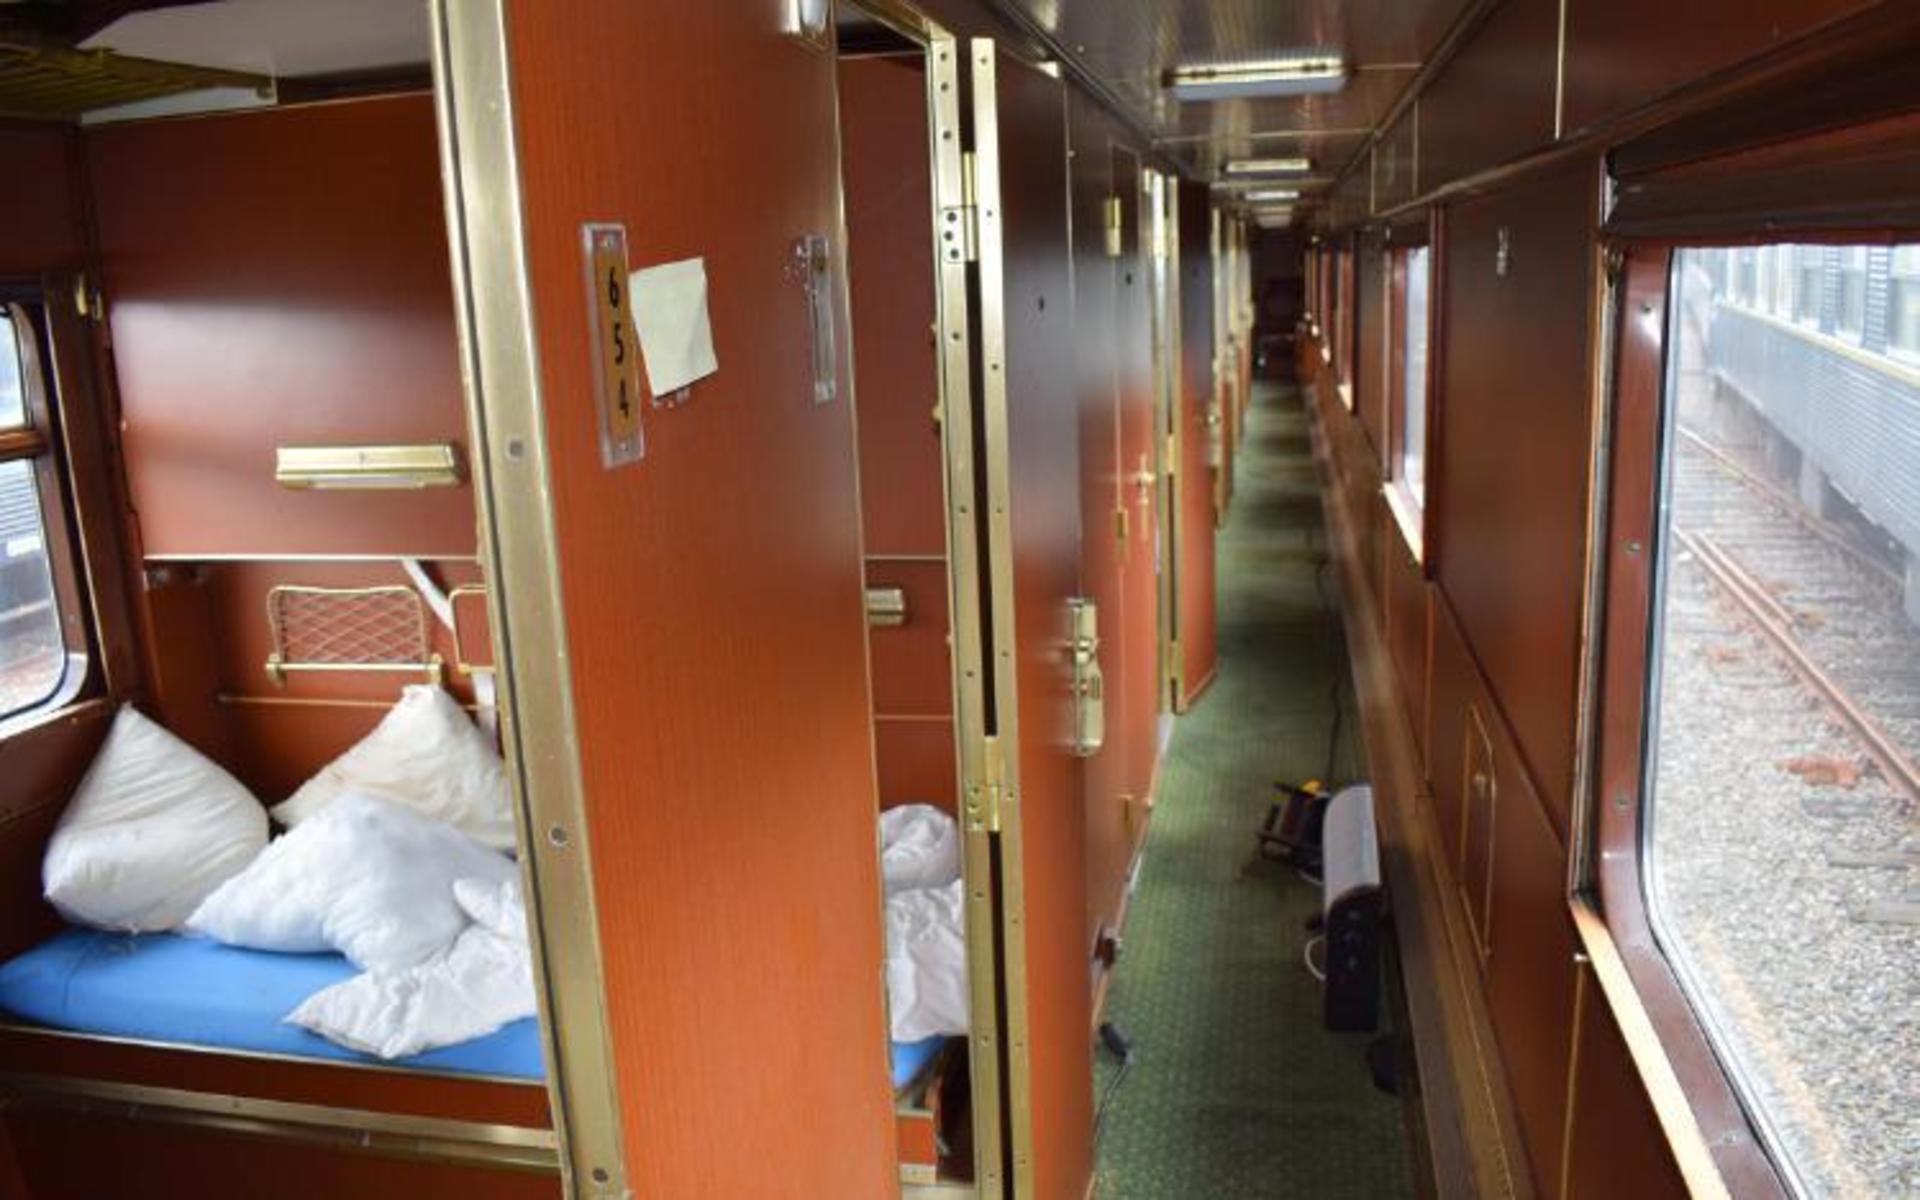 I sovvagnen finns det elva rum med tre bäddar i varje. 